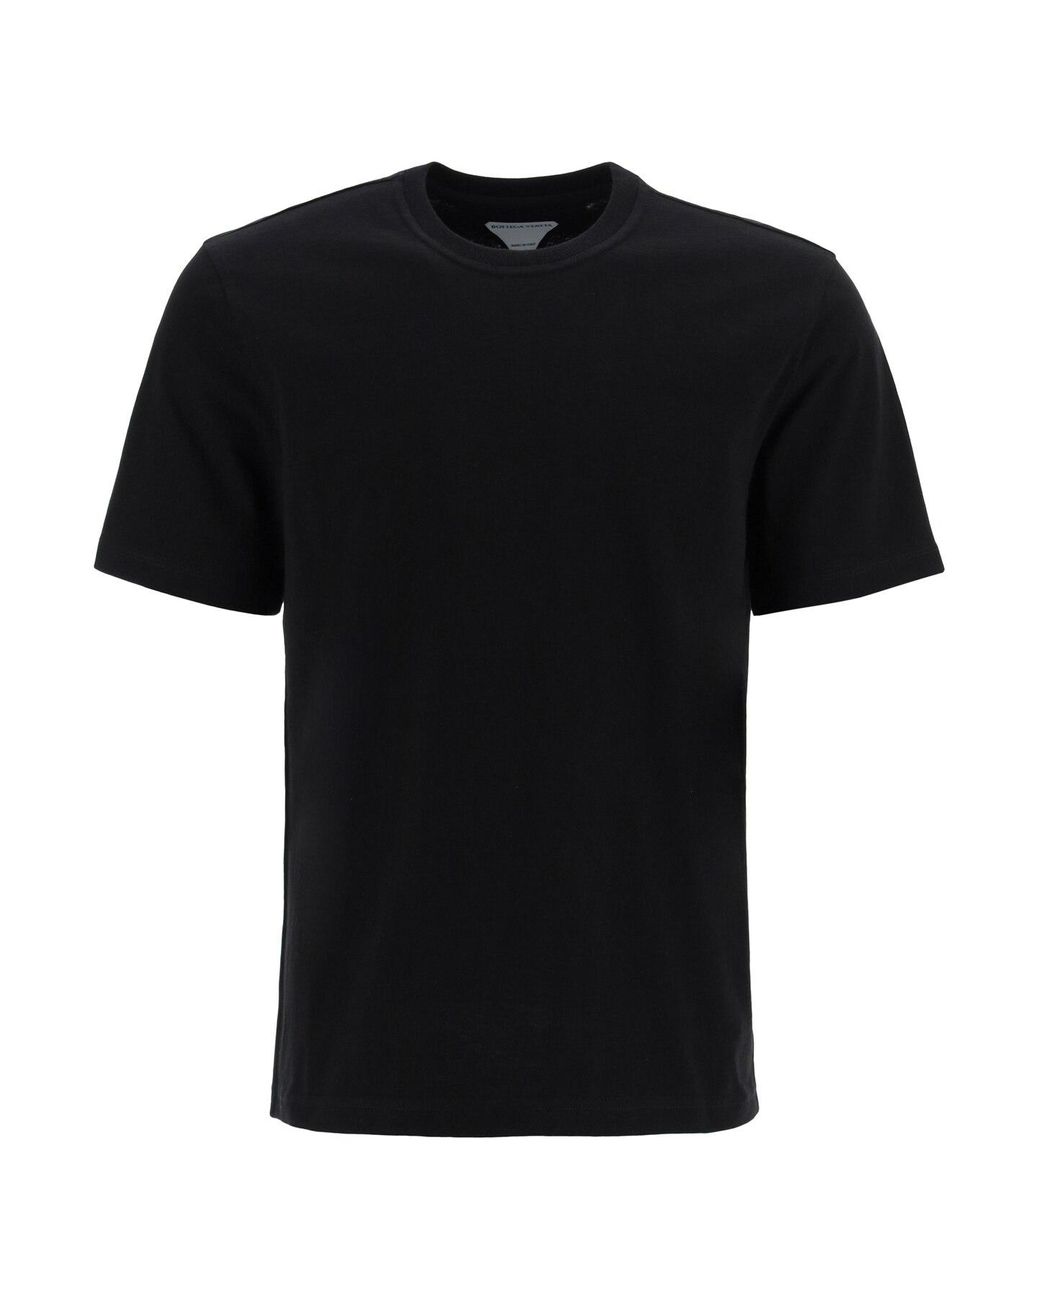 Bottega Veneta Cotton Basic T-shirt in Black for Men - Lyst